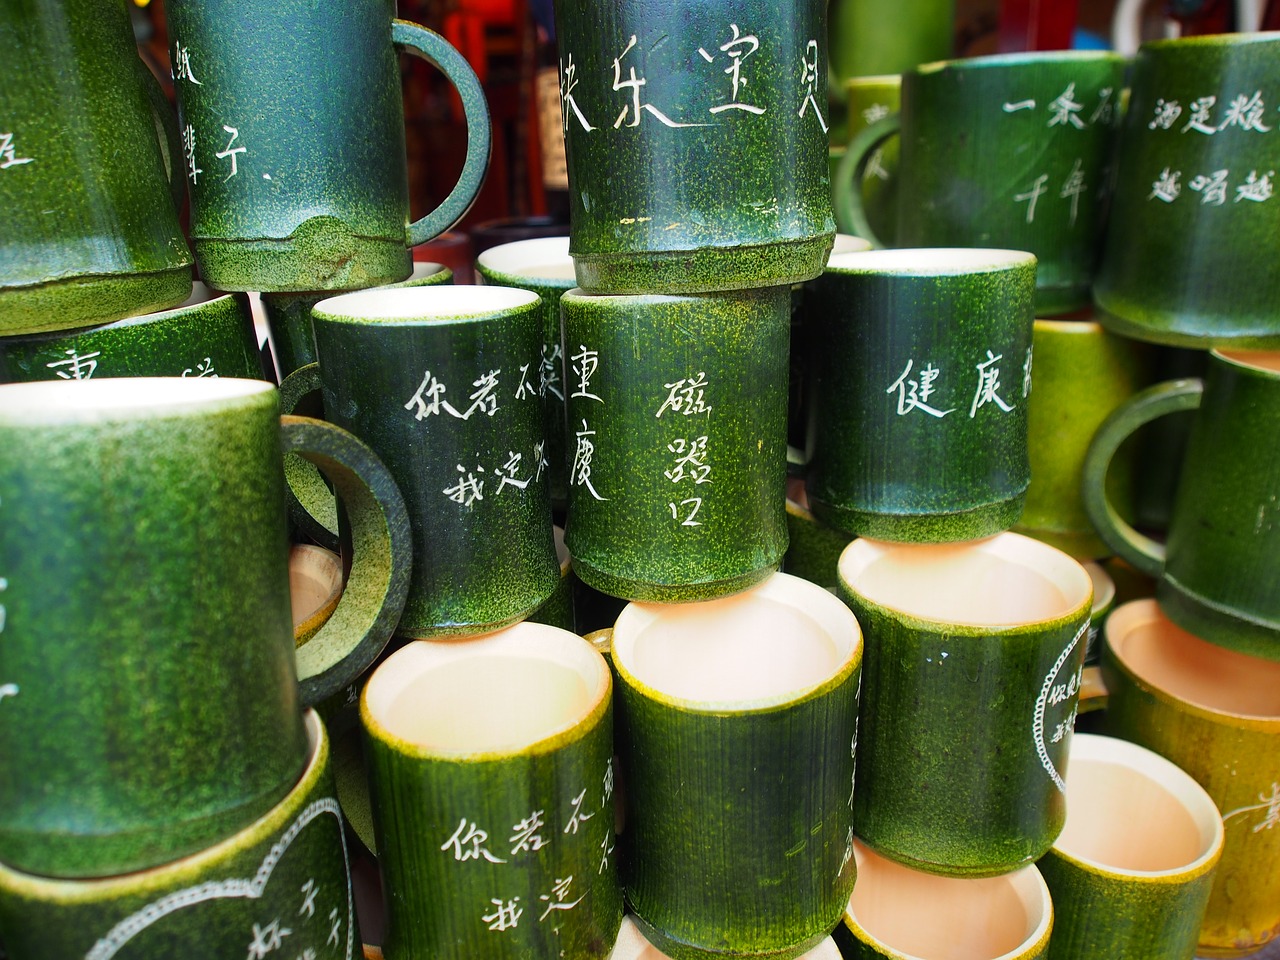 chongqing ciqikou bamboo products free photo